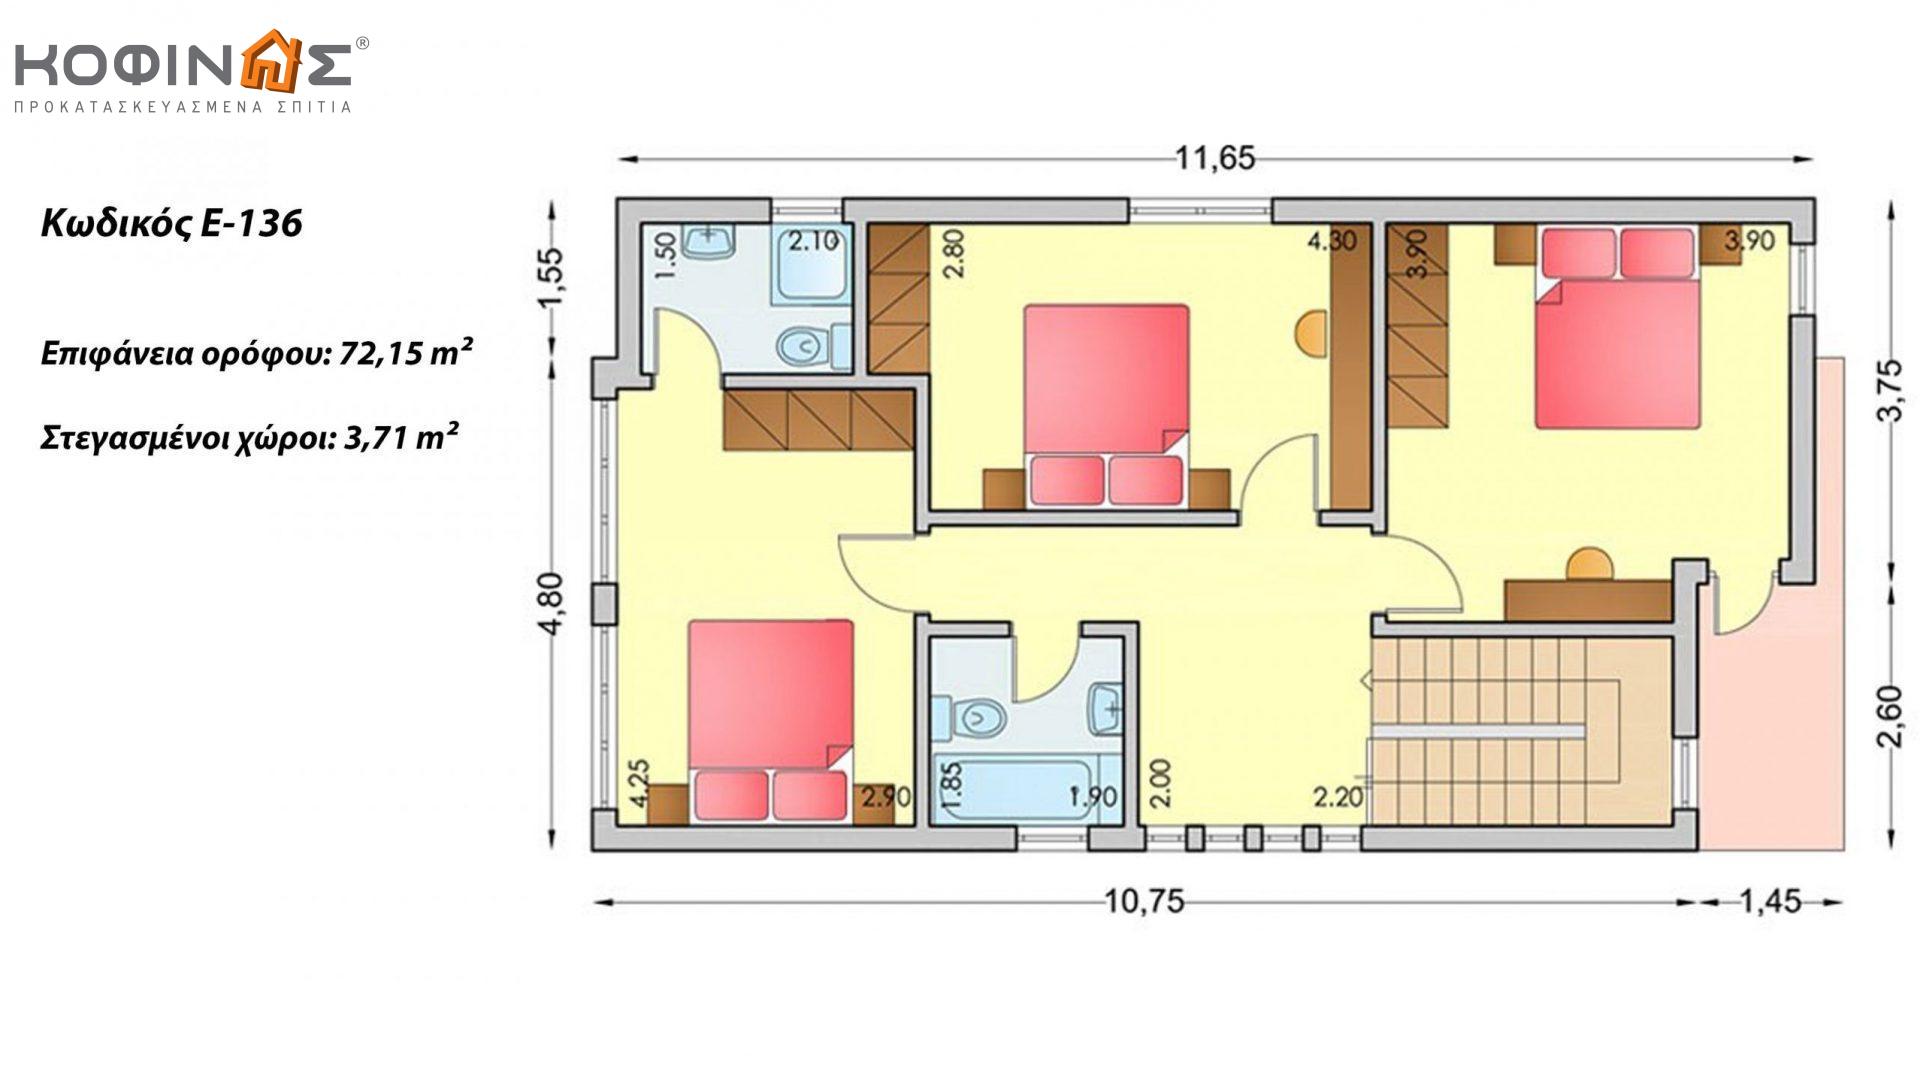 Συγκρότημα κατοικιών E-136, συνολικής επιφάνειας 3 x 136,39 = 409,17 τ.μ., συνολική επιφάνεια στεγασμένων χώρων 14,8 τ.μ.